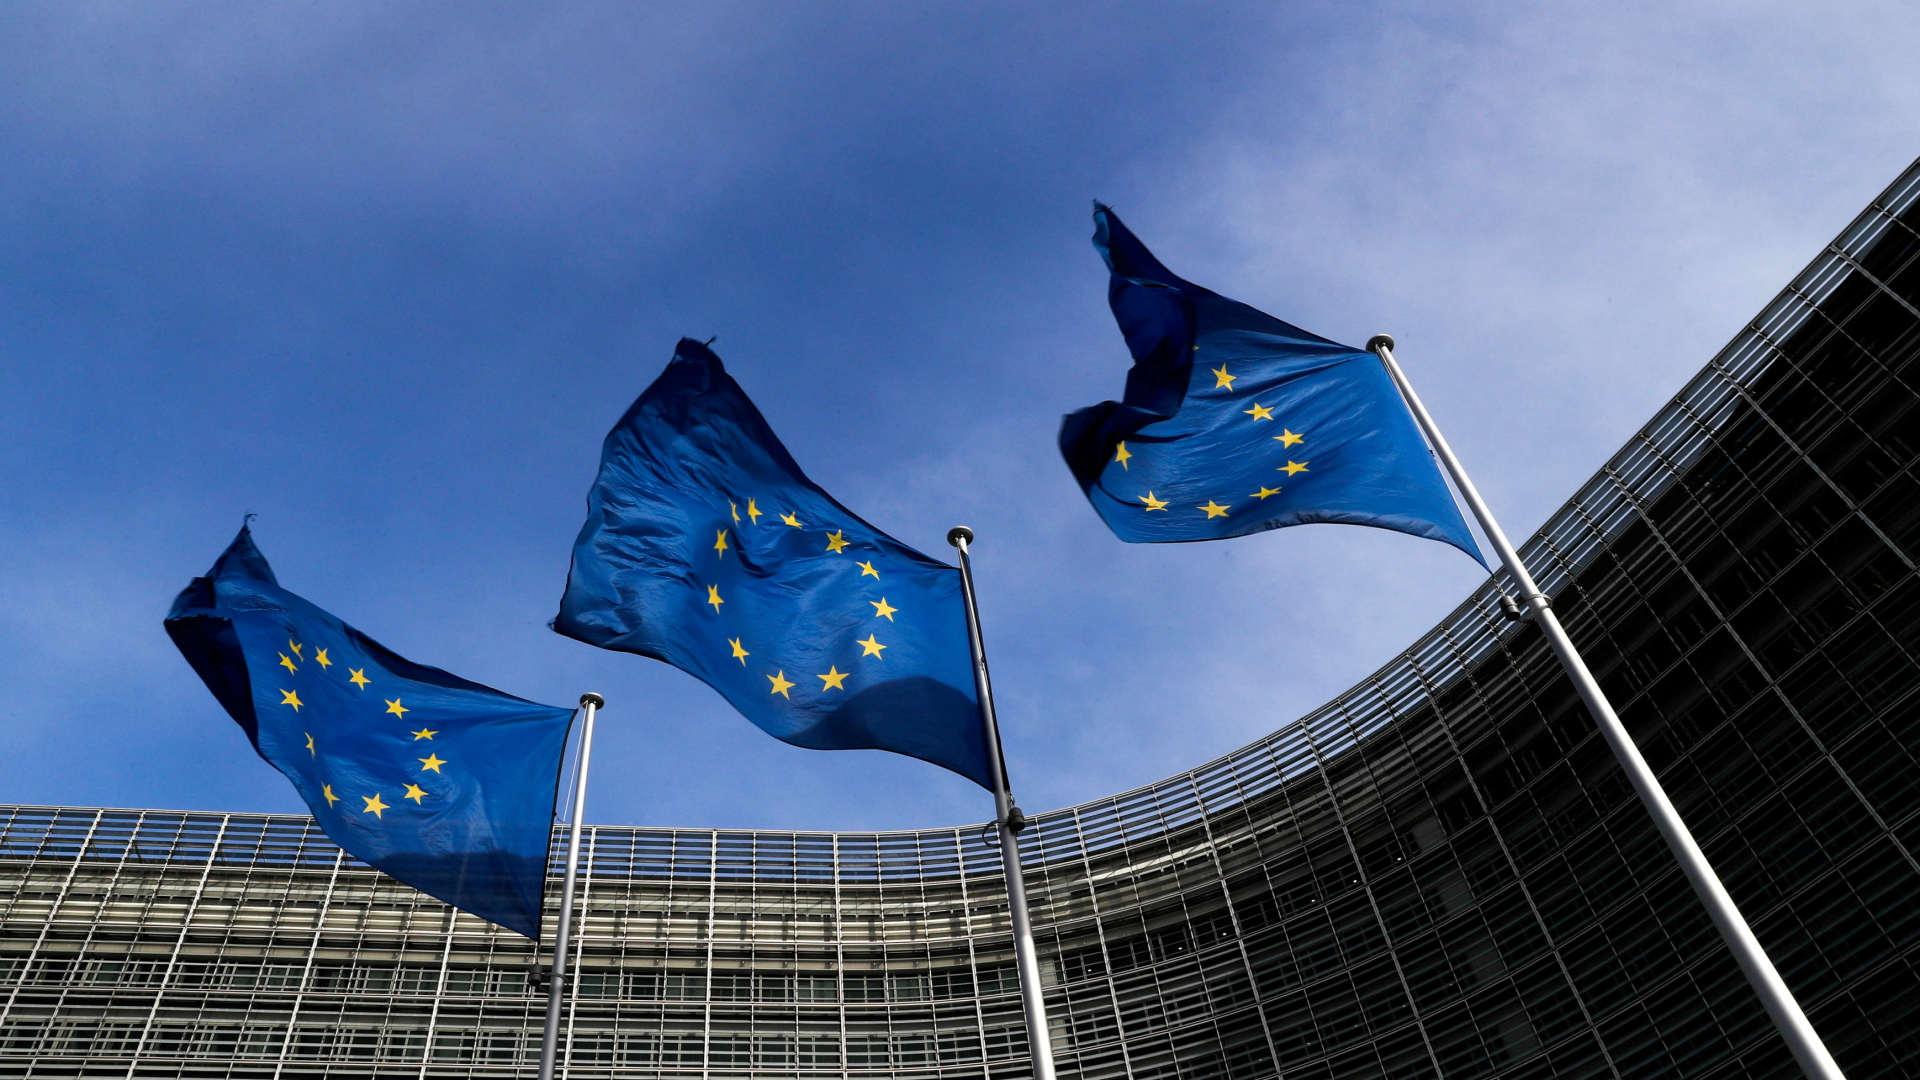 Flaggen der Europäischen Union stehen vor dem Sitz der EU-Kommission in Brüssel.